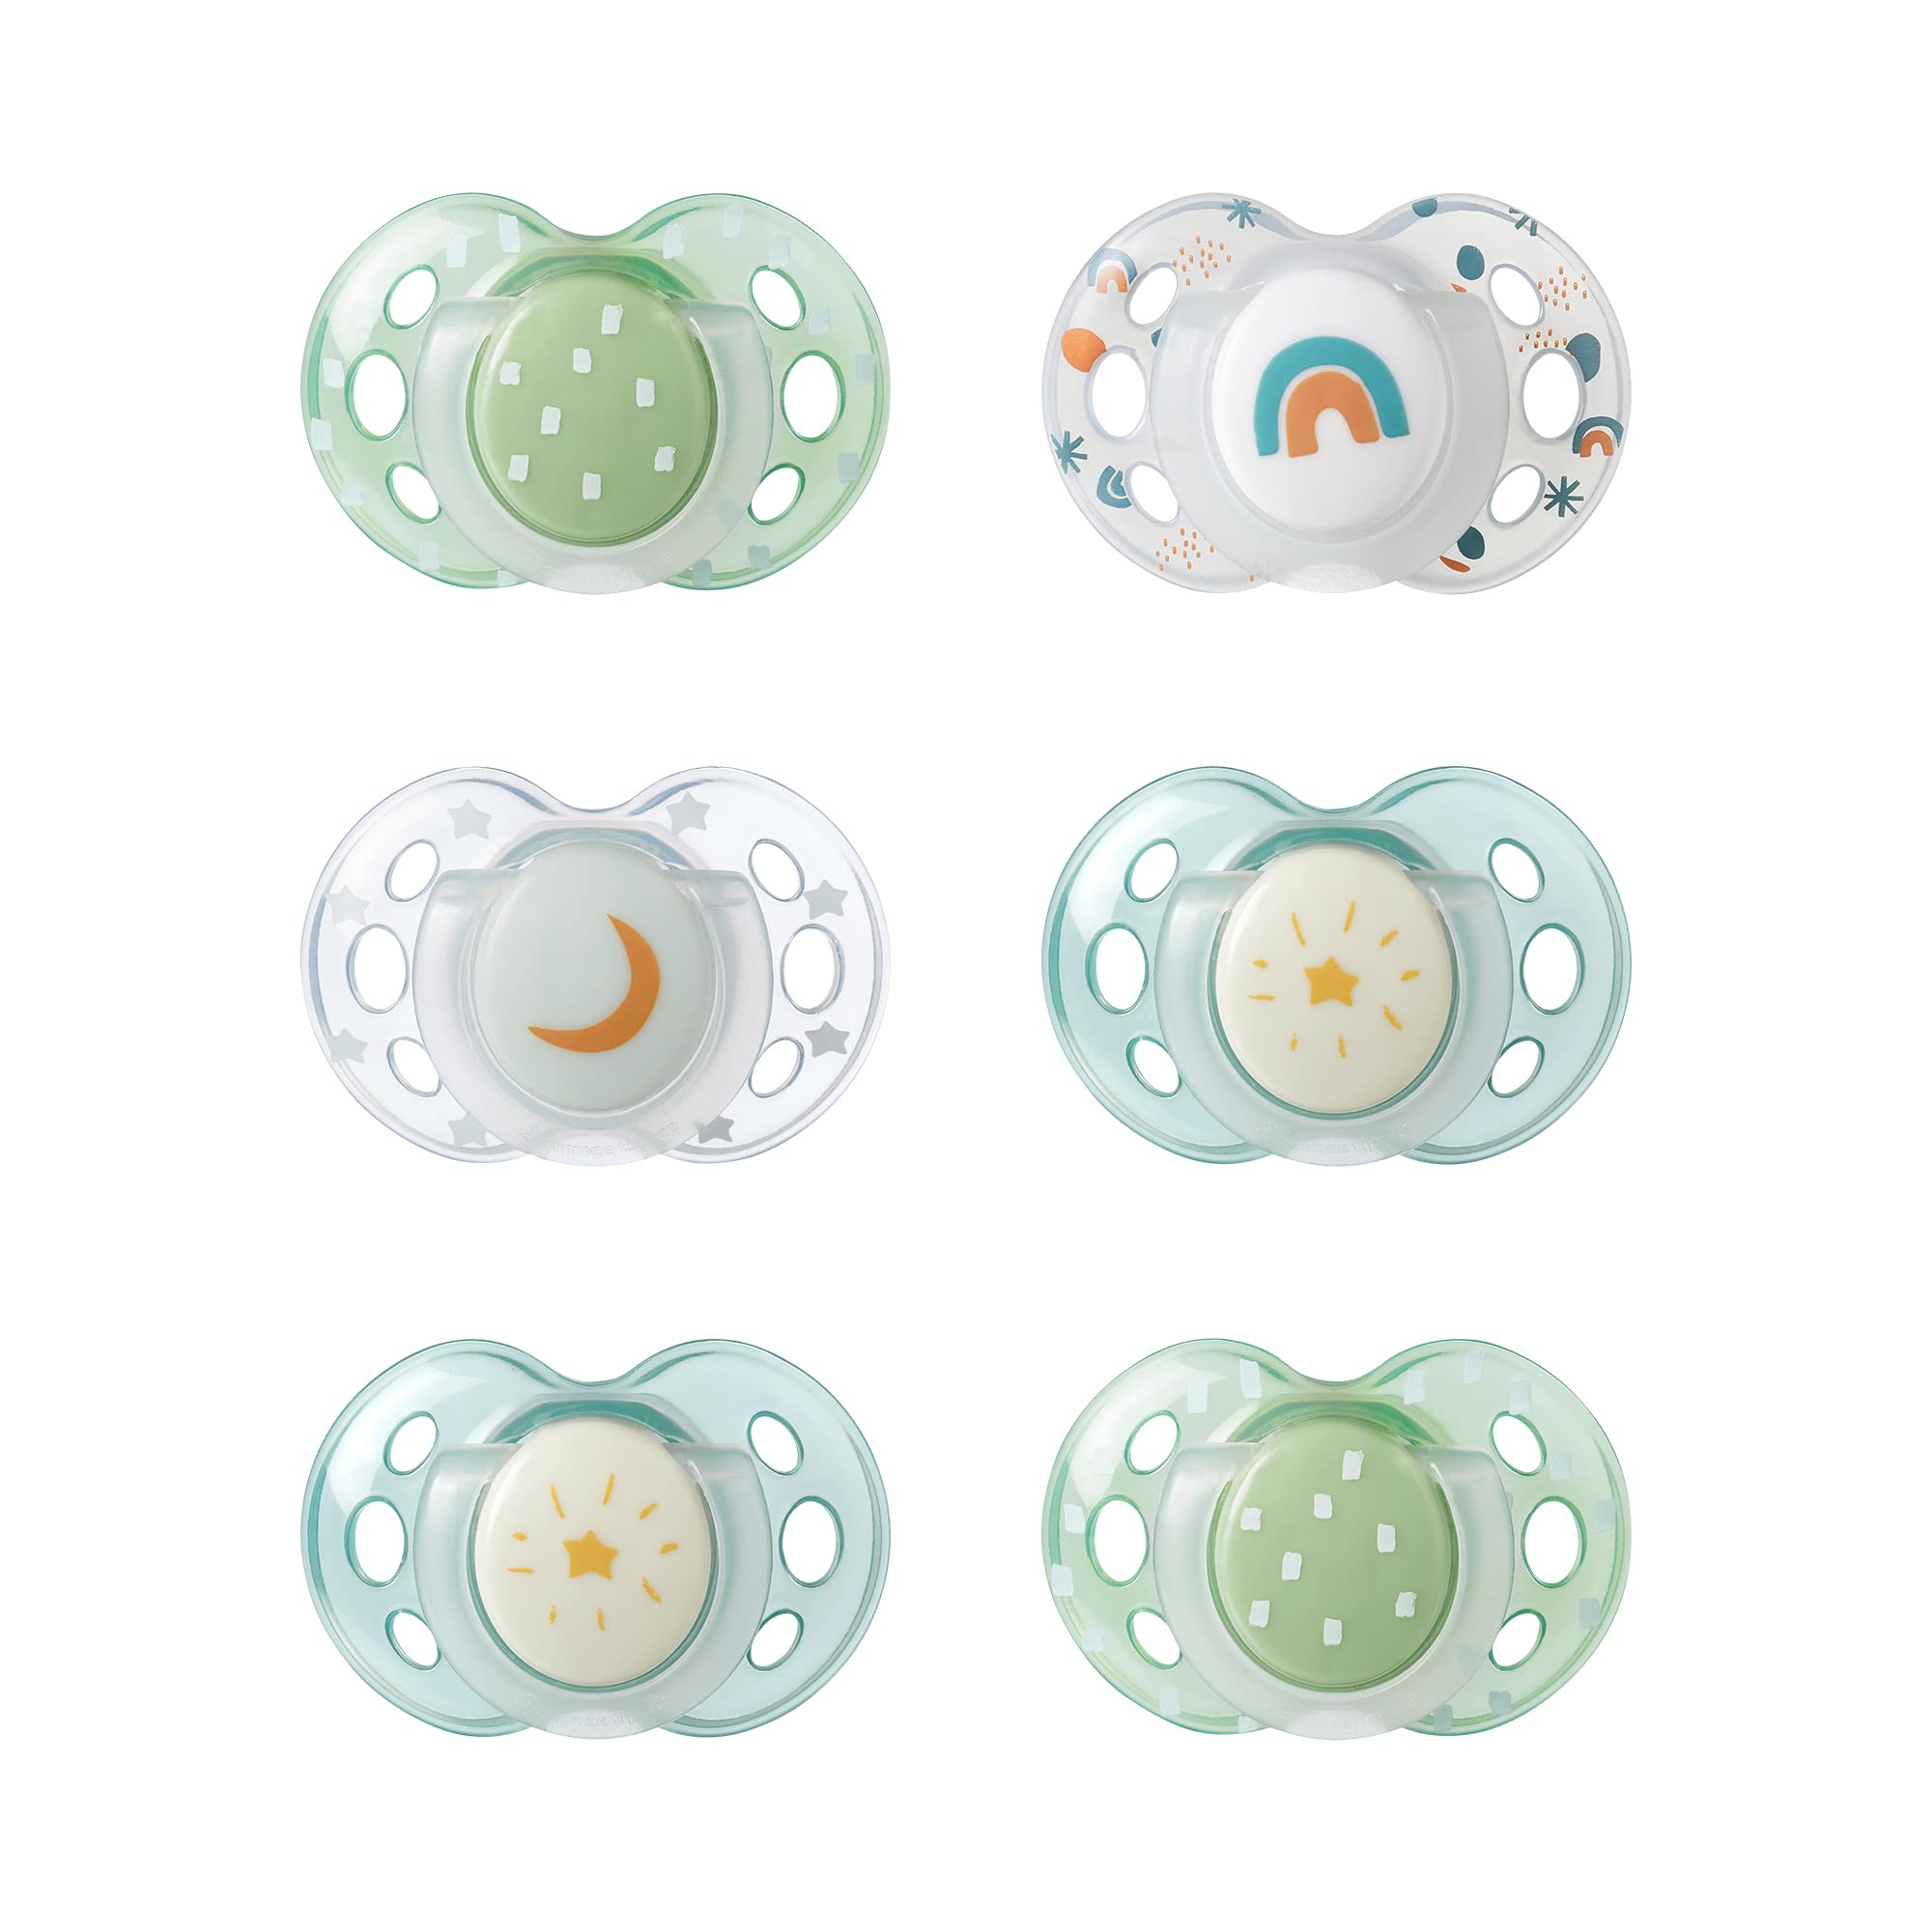 مجموعة لهايات نايت دامي، من السيليكون وخالية من BPA، بتصميم متماثل لتقويم الاسنان، تضيء في الظلام، مناسبة لعمرمن 18-36 شهر، من 6 قطع، من تومي تيبي